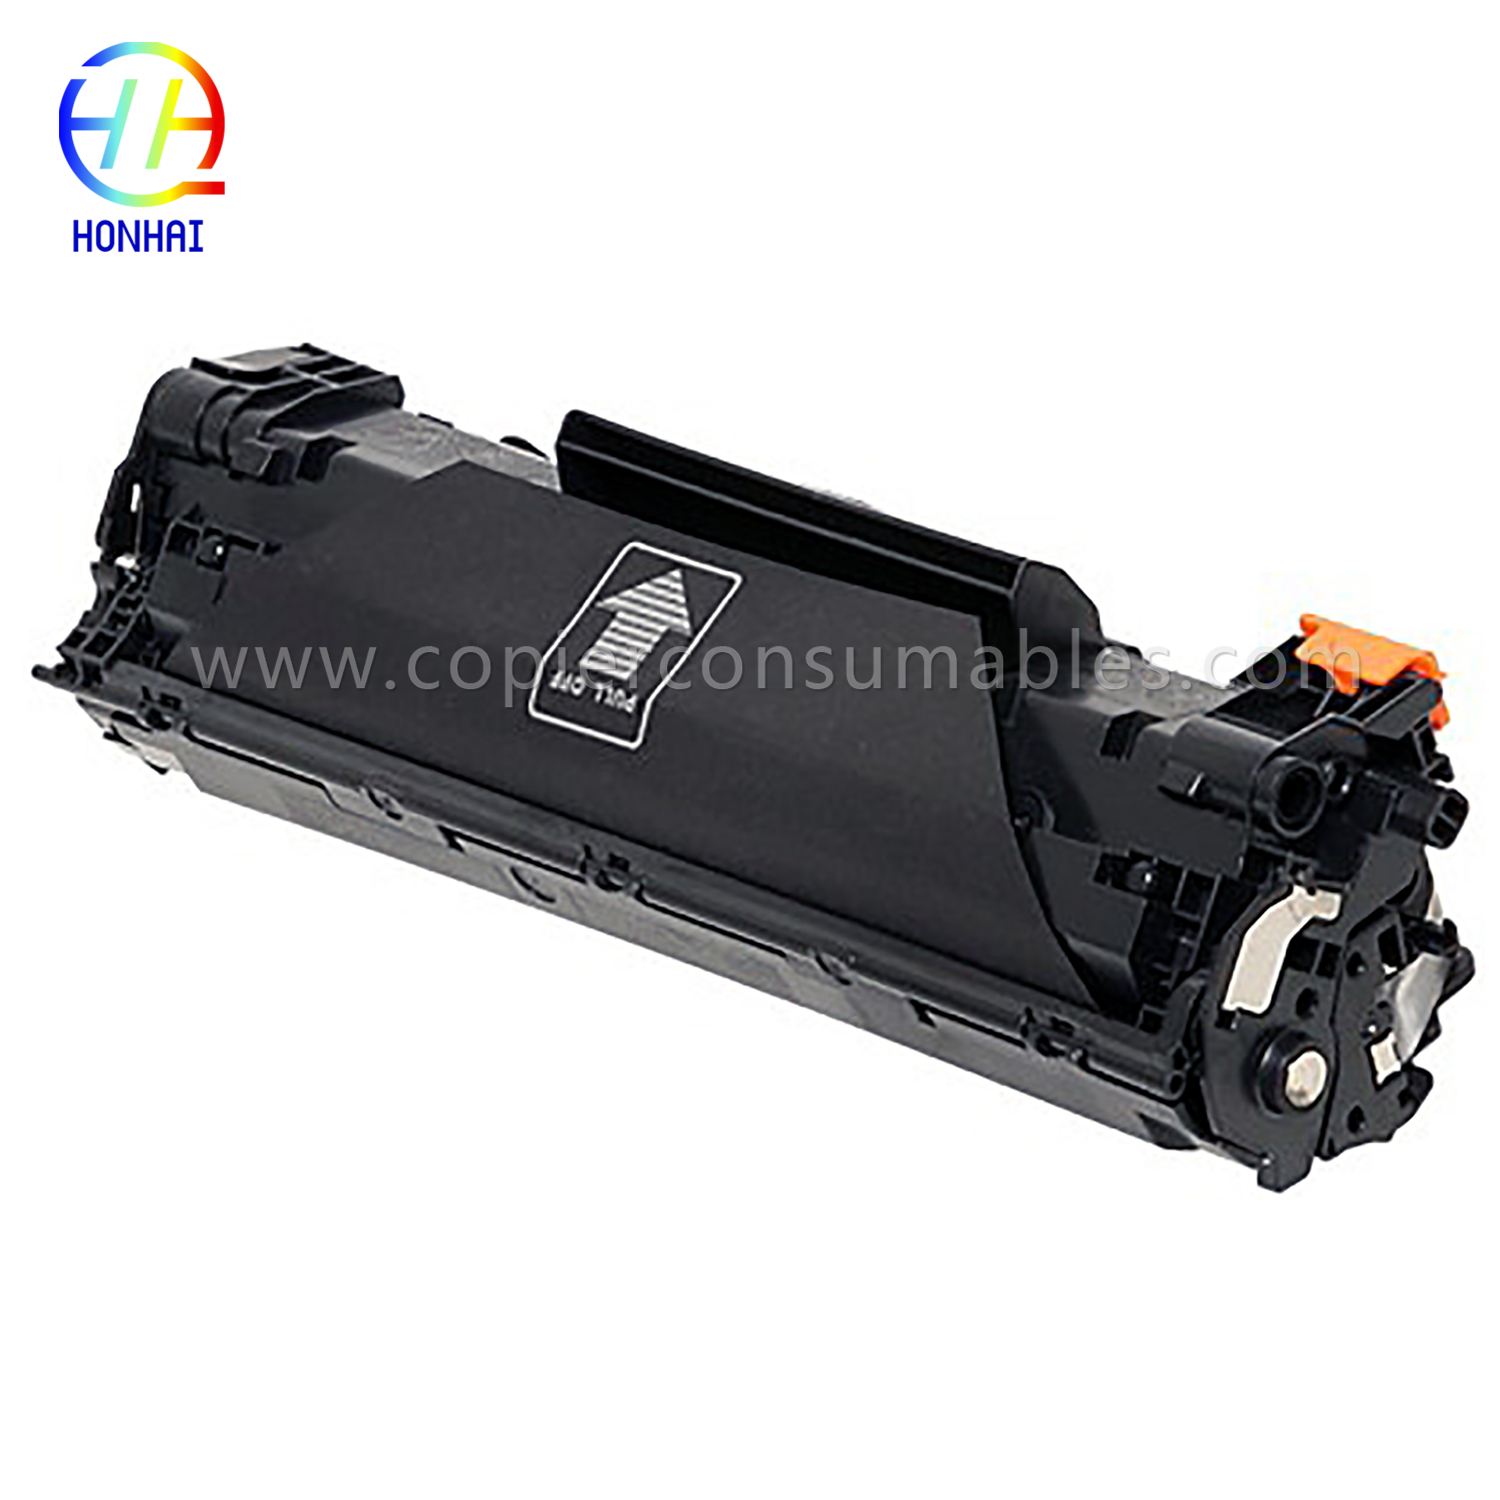 ตลับหมึกสีดำ HP LaserJet Pro M1536dnf P1606dn (CE278A) 13.8x5.1x6.4 เพิ่มเติม